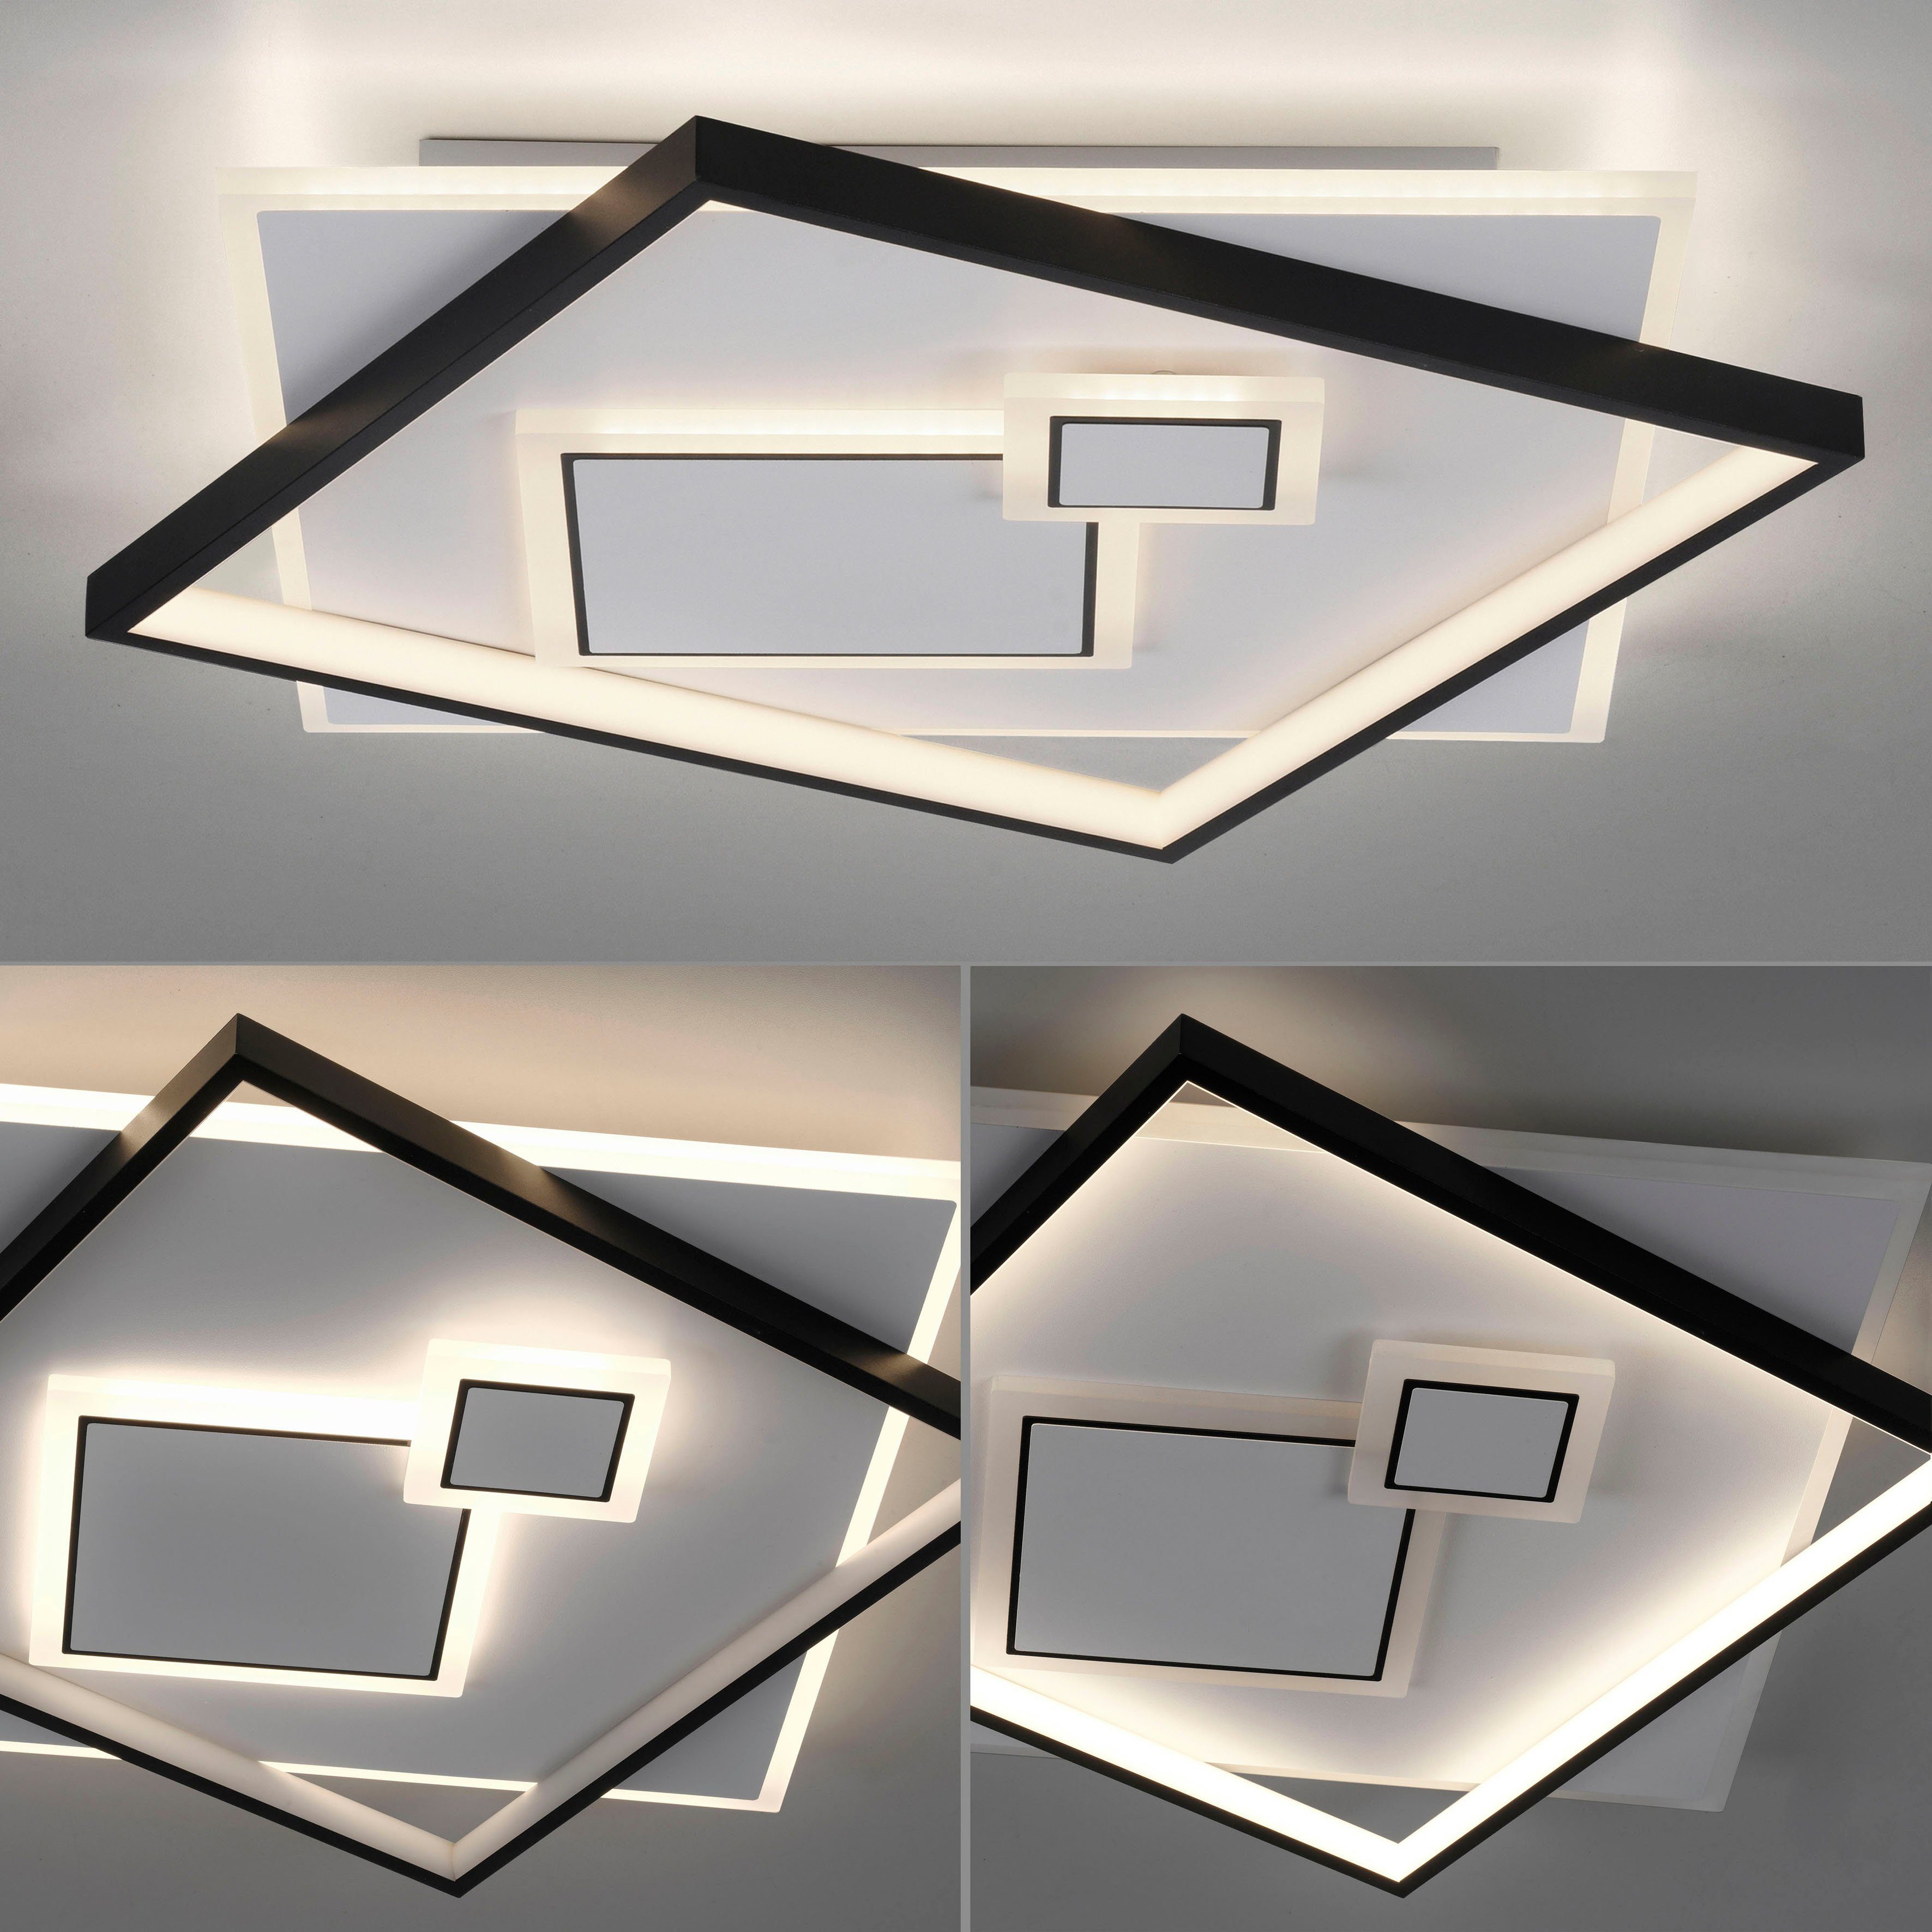 Paul Neuhaus schaltbar, MAILAK, Warmweiß, (Schalter) LED steuerbar integriert, separat getrennt LED, fest Deckenleuchte